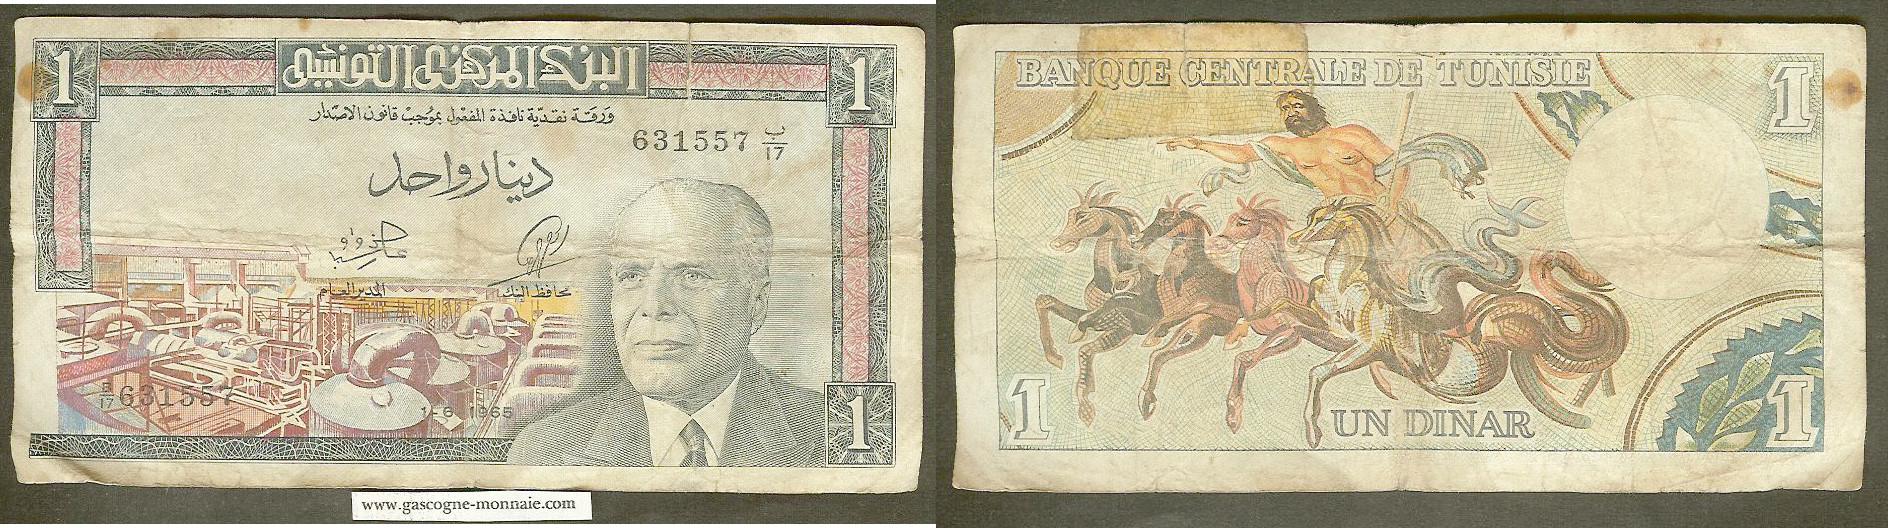 Tunisia 1 dinar 1965 gF